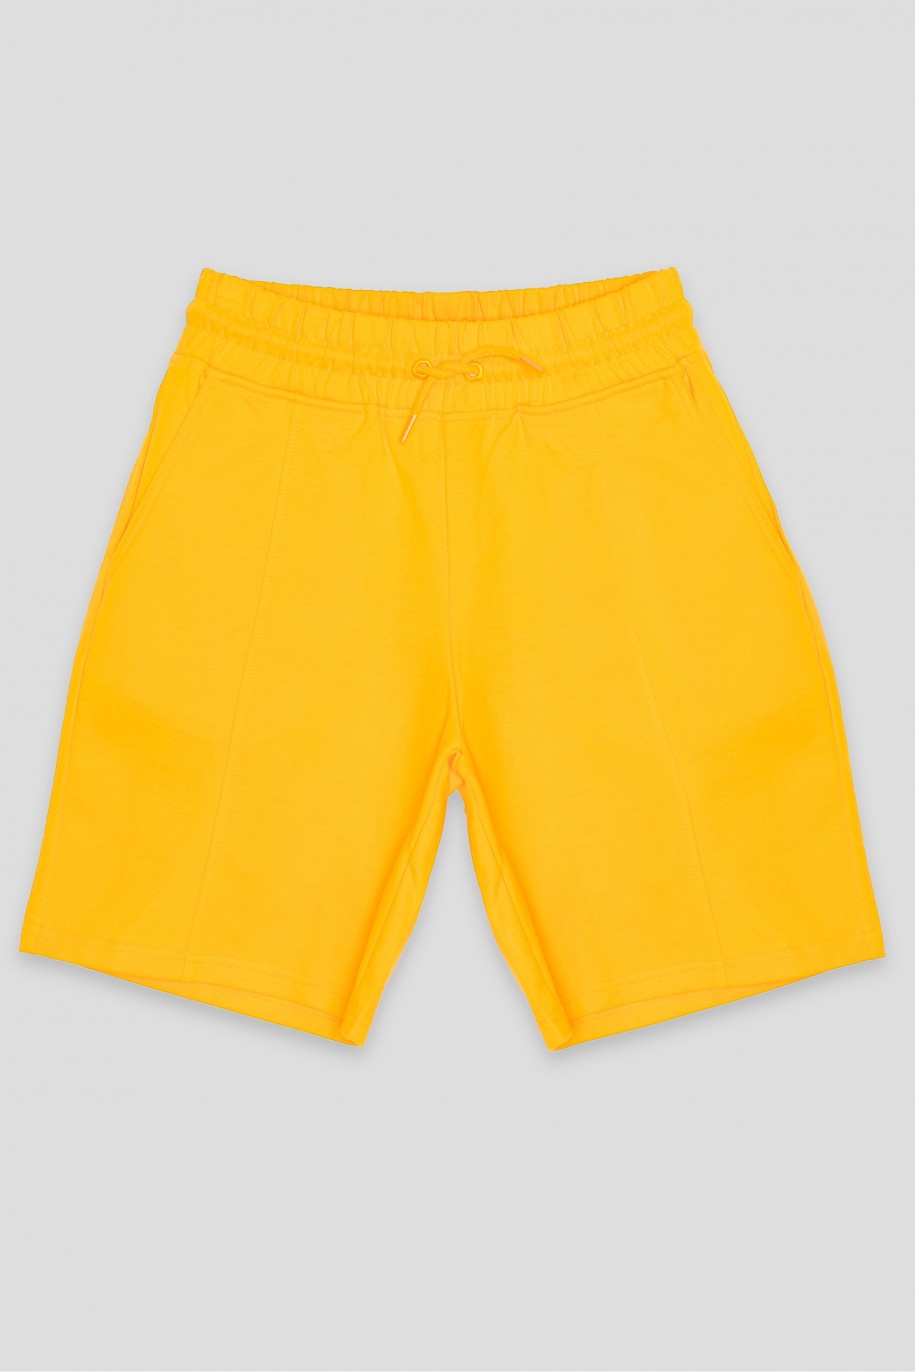 Żółte krótkie dresowe spodenki - 41907